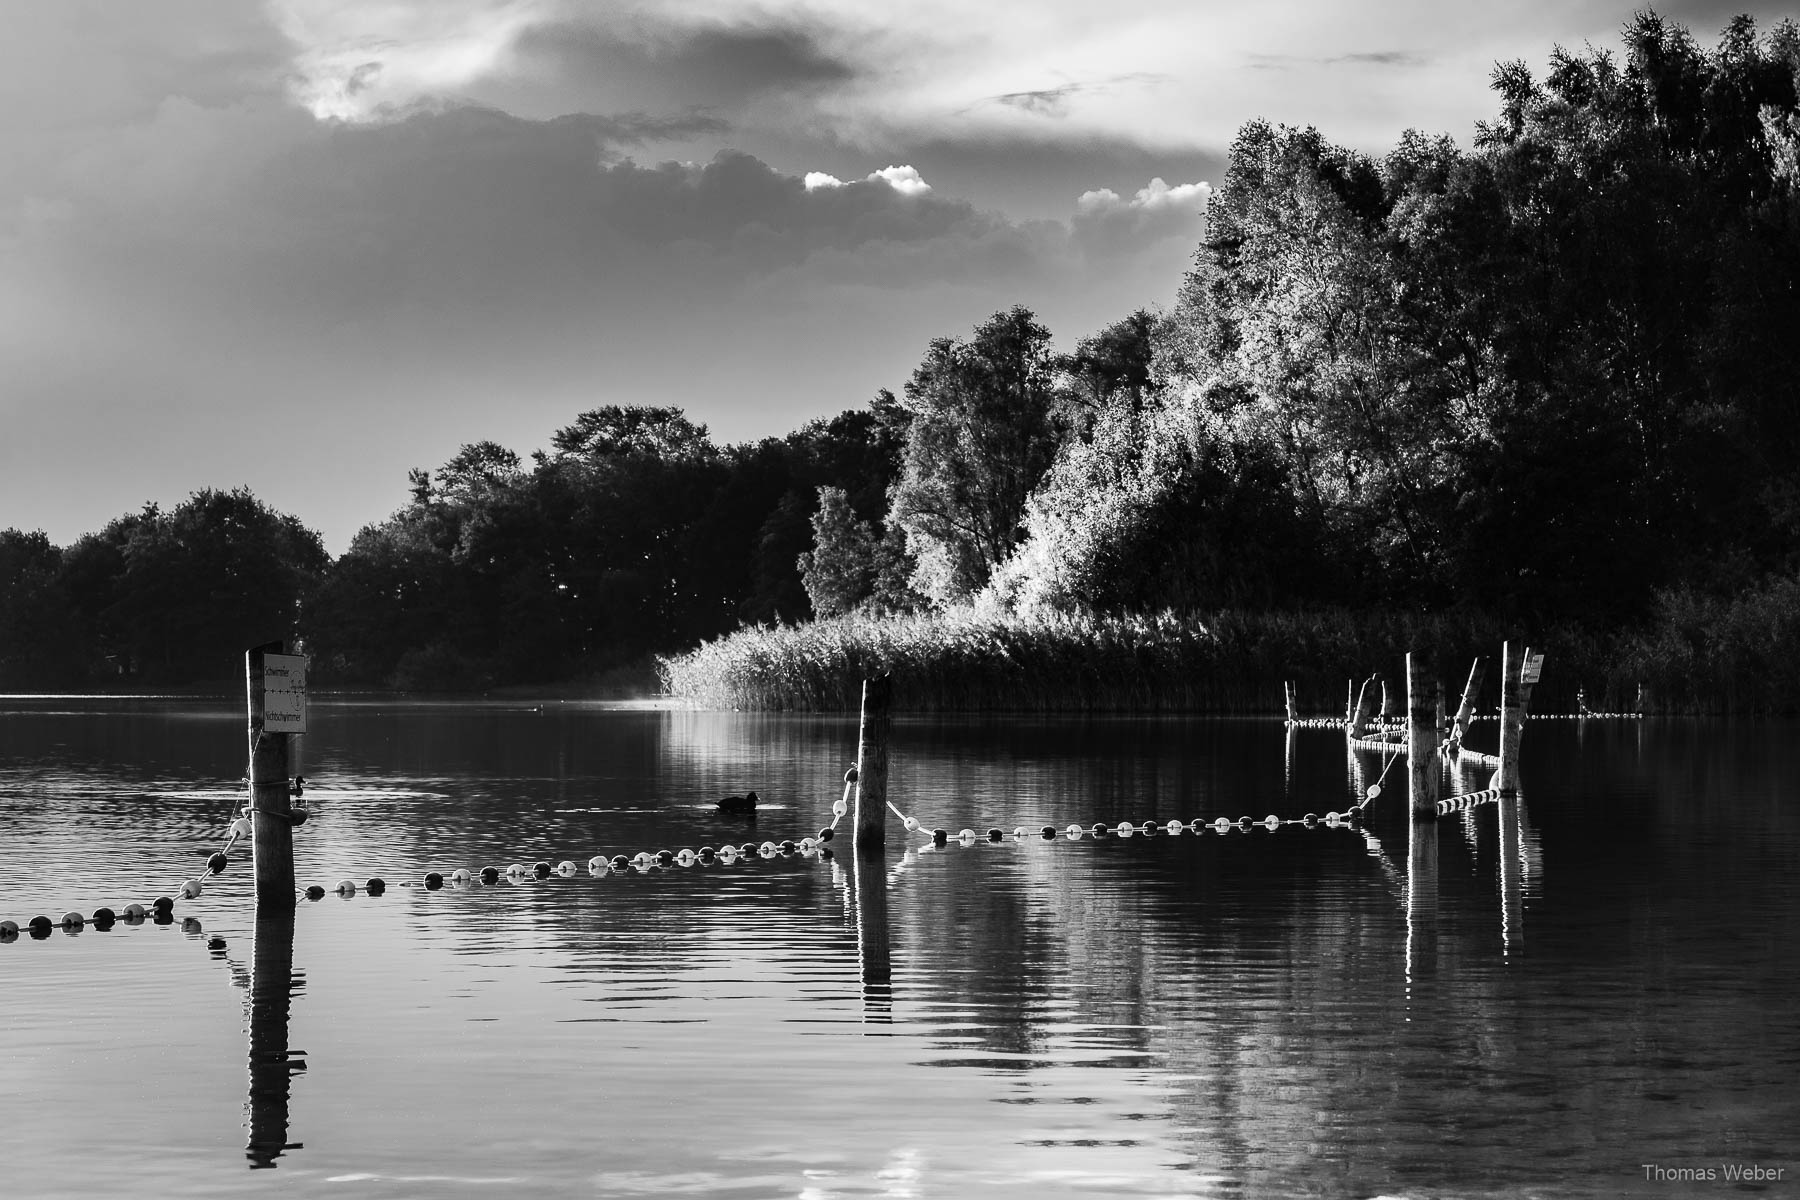 Landschaftsfotos am kleinen Bornhorster See in Oldenburg, Fotograf Thomas Weber aus Oldenburg